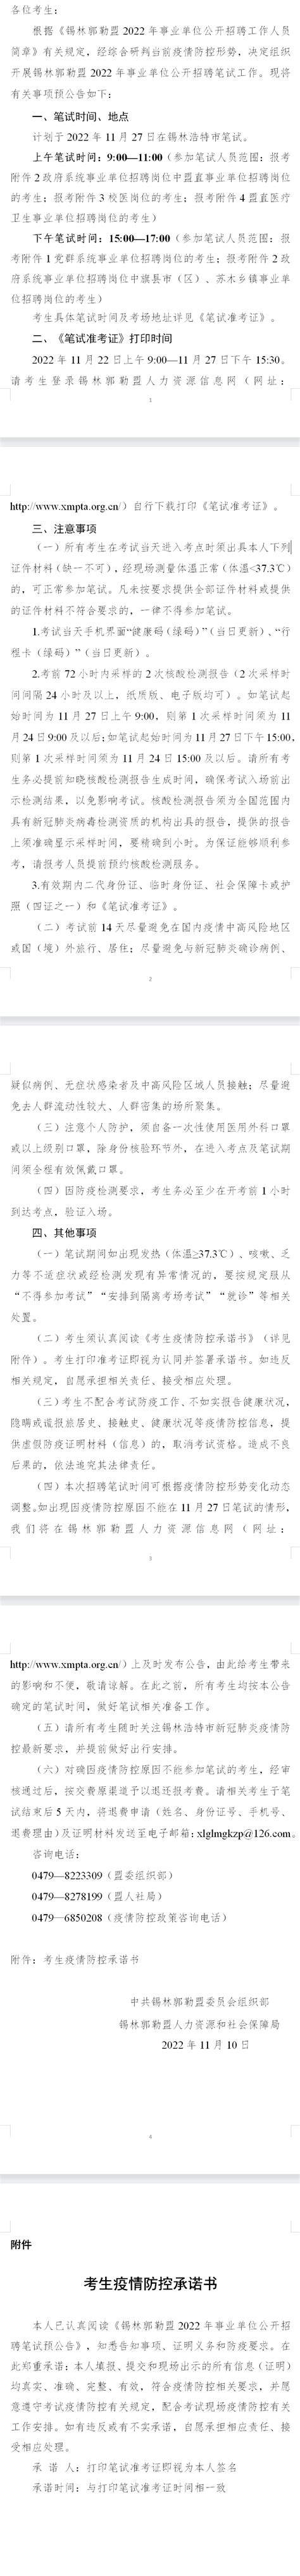 2022交通银行内蒙古锡林郭勒分行校园招聘公告【10月17日截止】